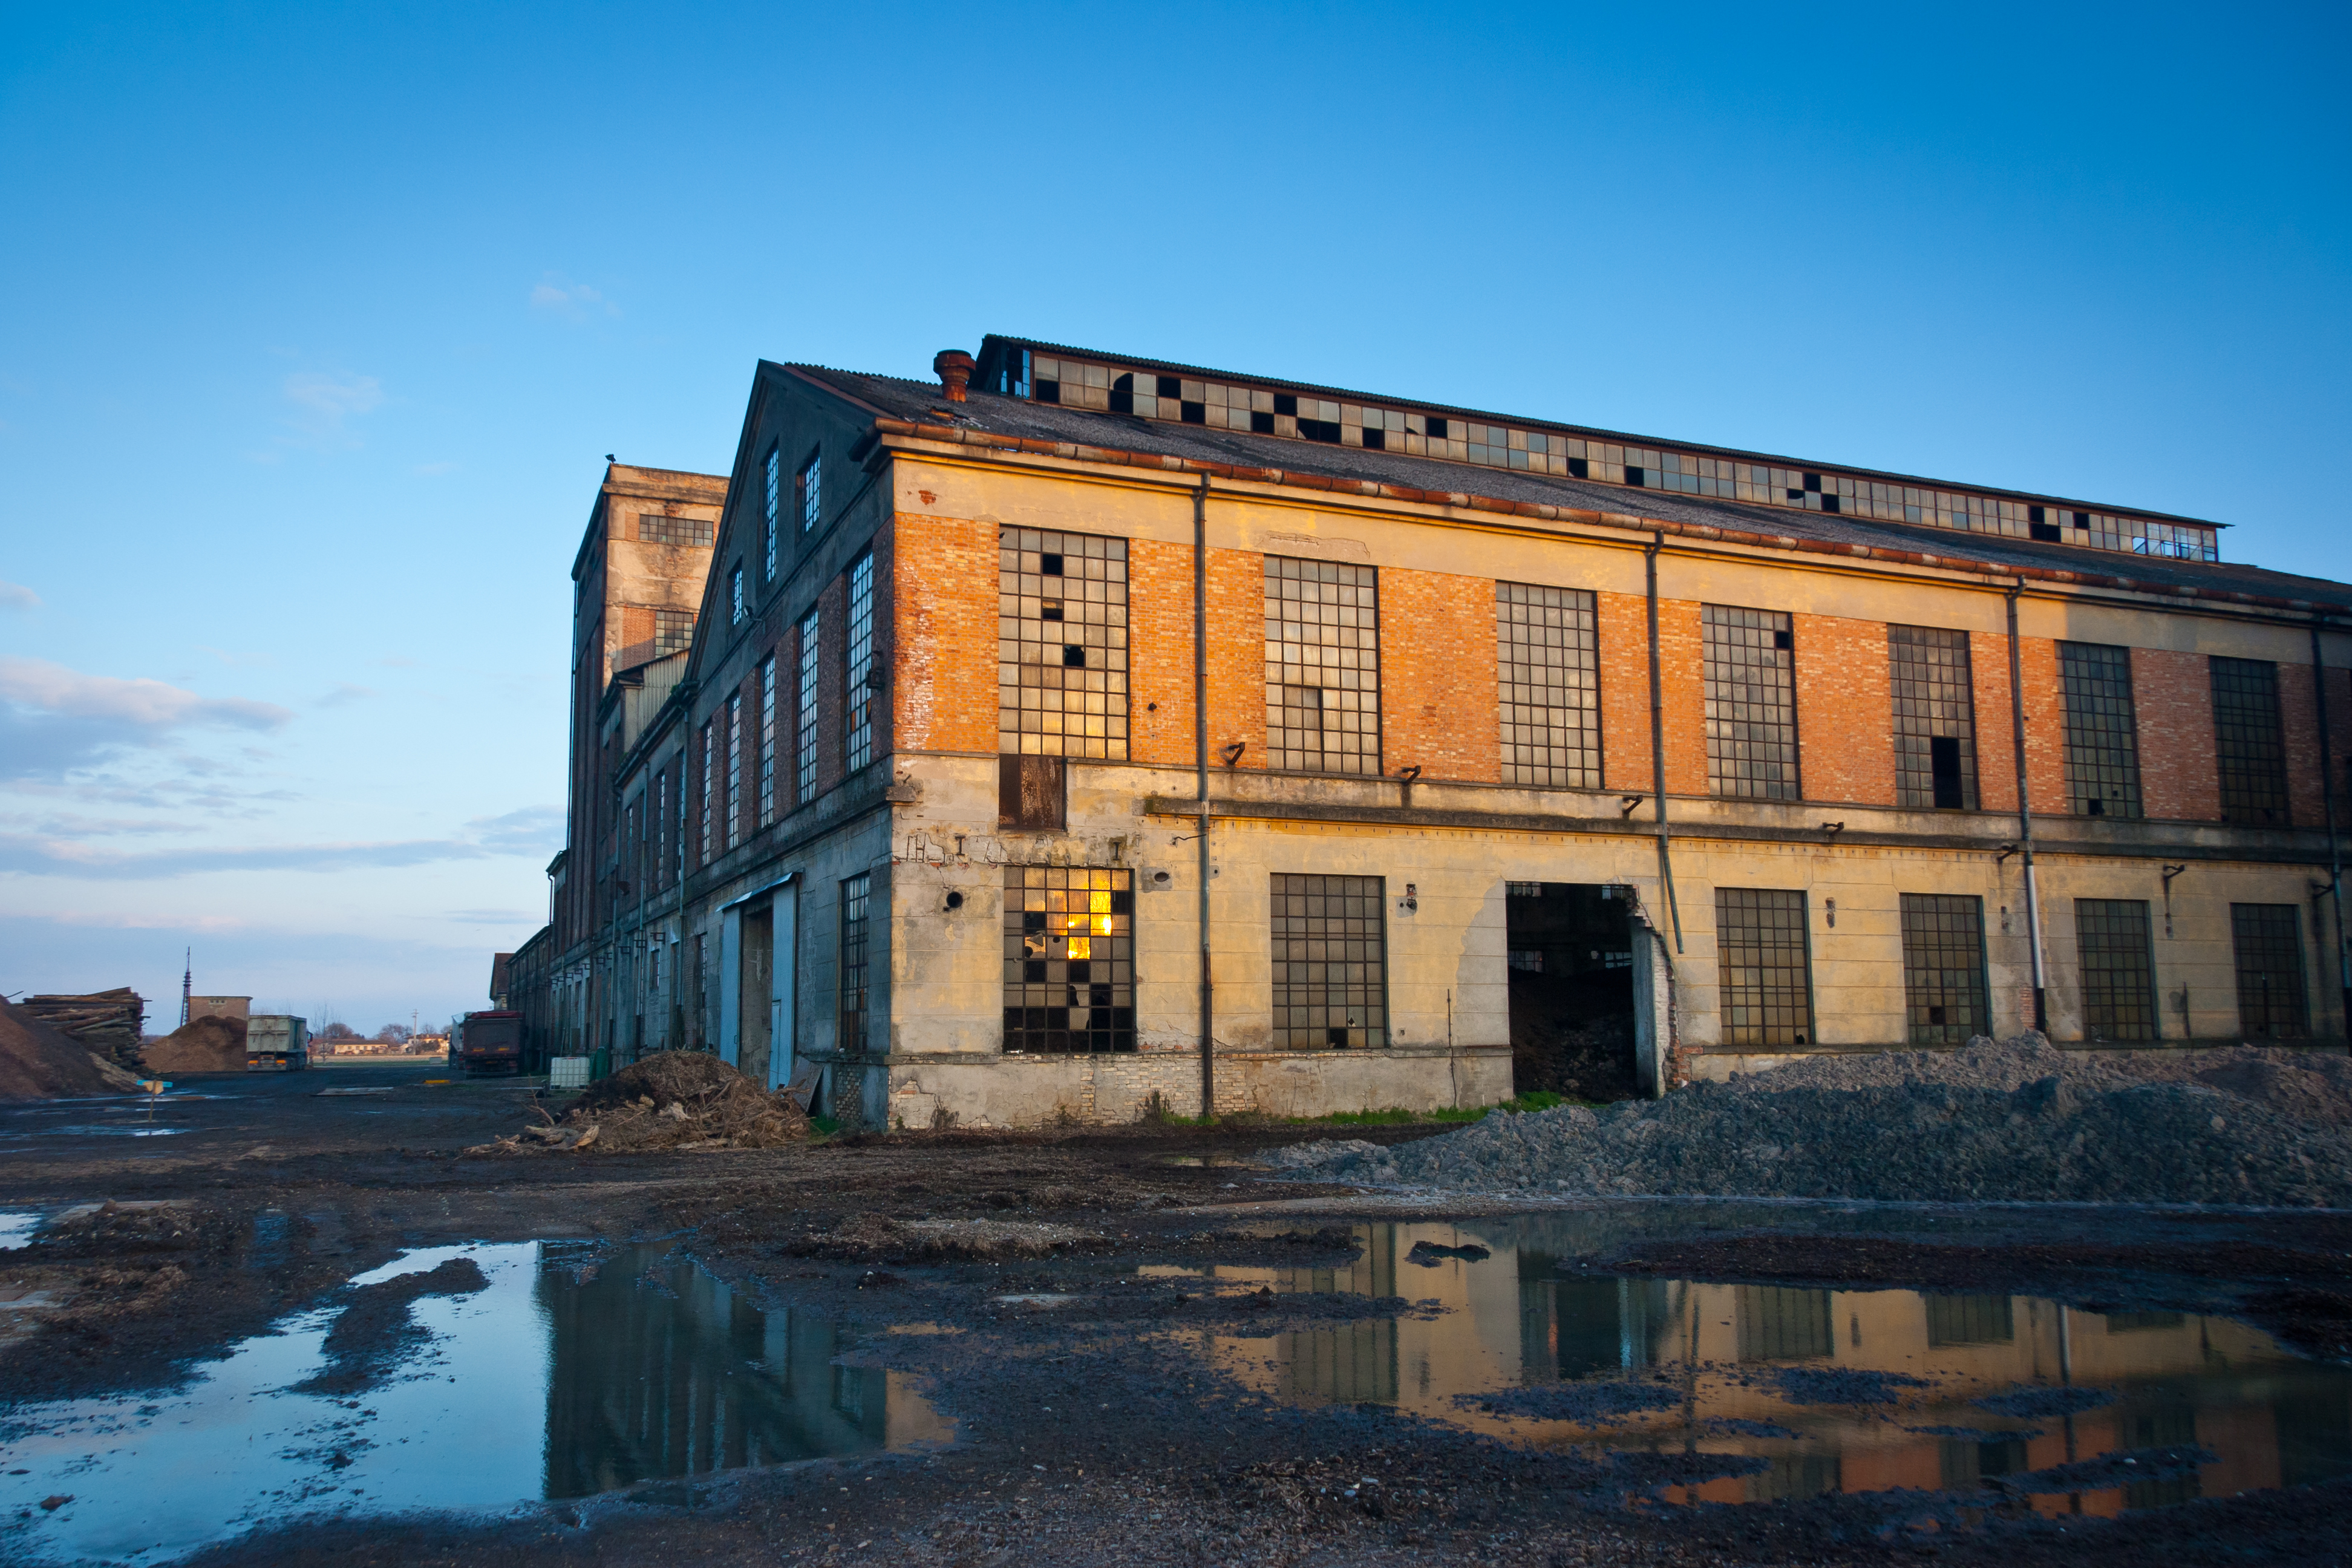 Planta industrial abandonada al atardecer. | Fuente: Shutterstock